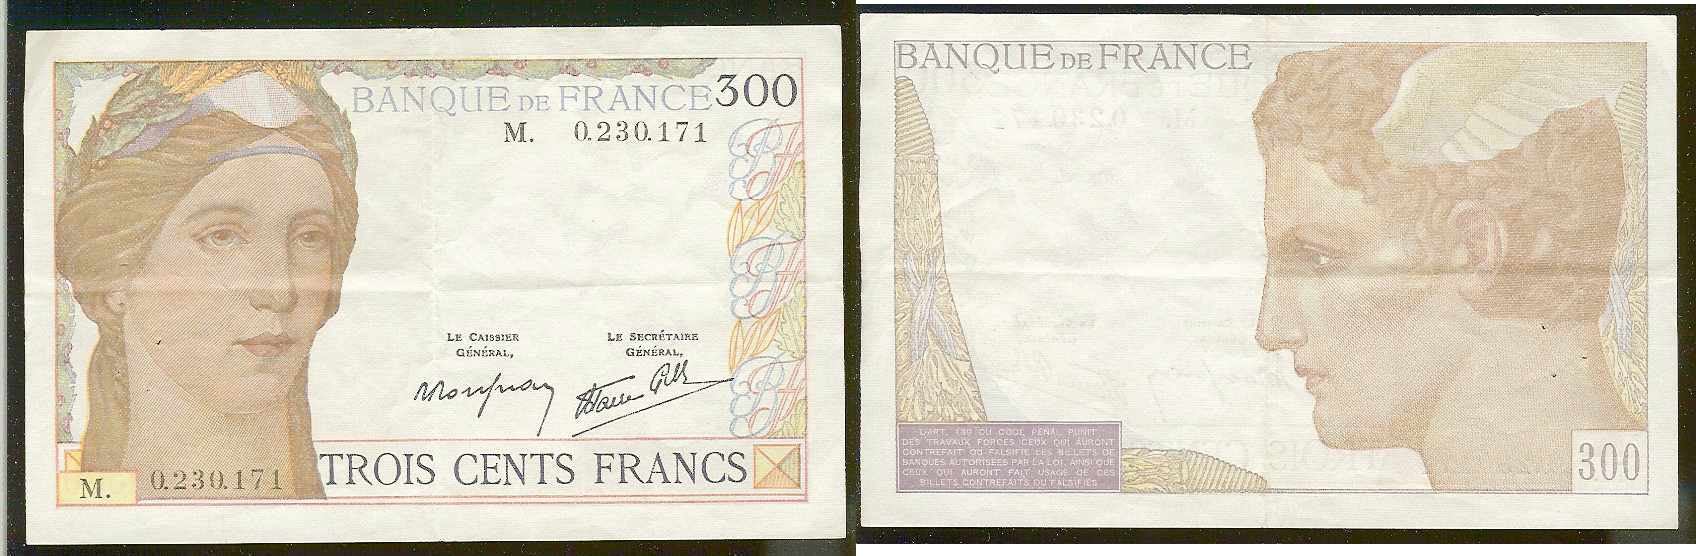 300 Francs FRANCE 1938 SUP-